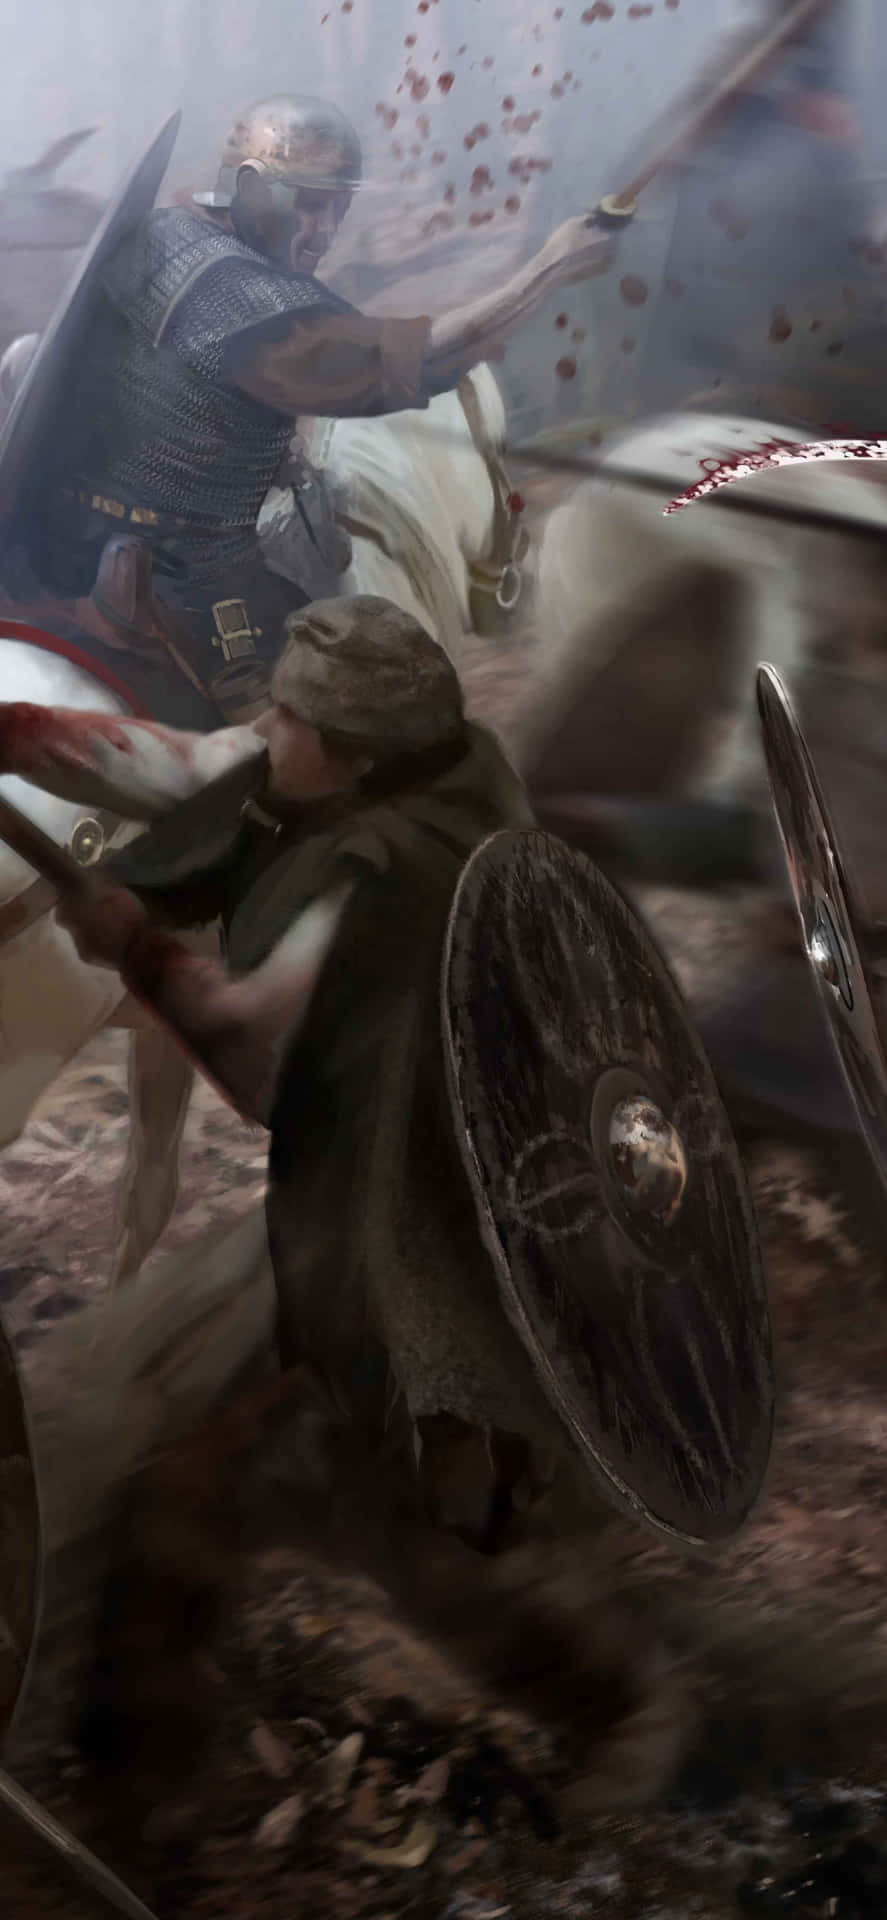 Iphonexs Max Bakgrundsbild Med Illustration Av Total War Attila Savage Warrior.